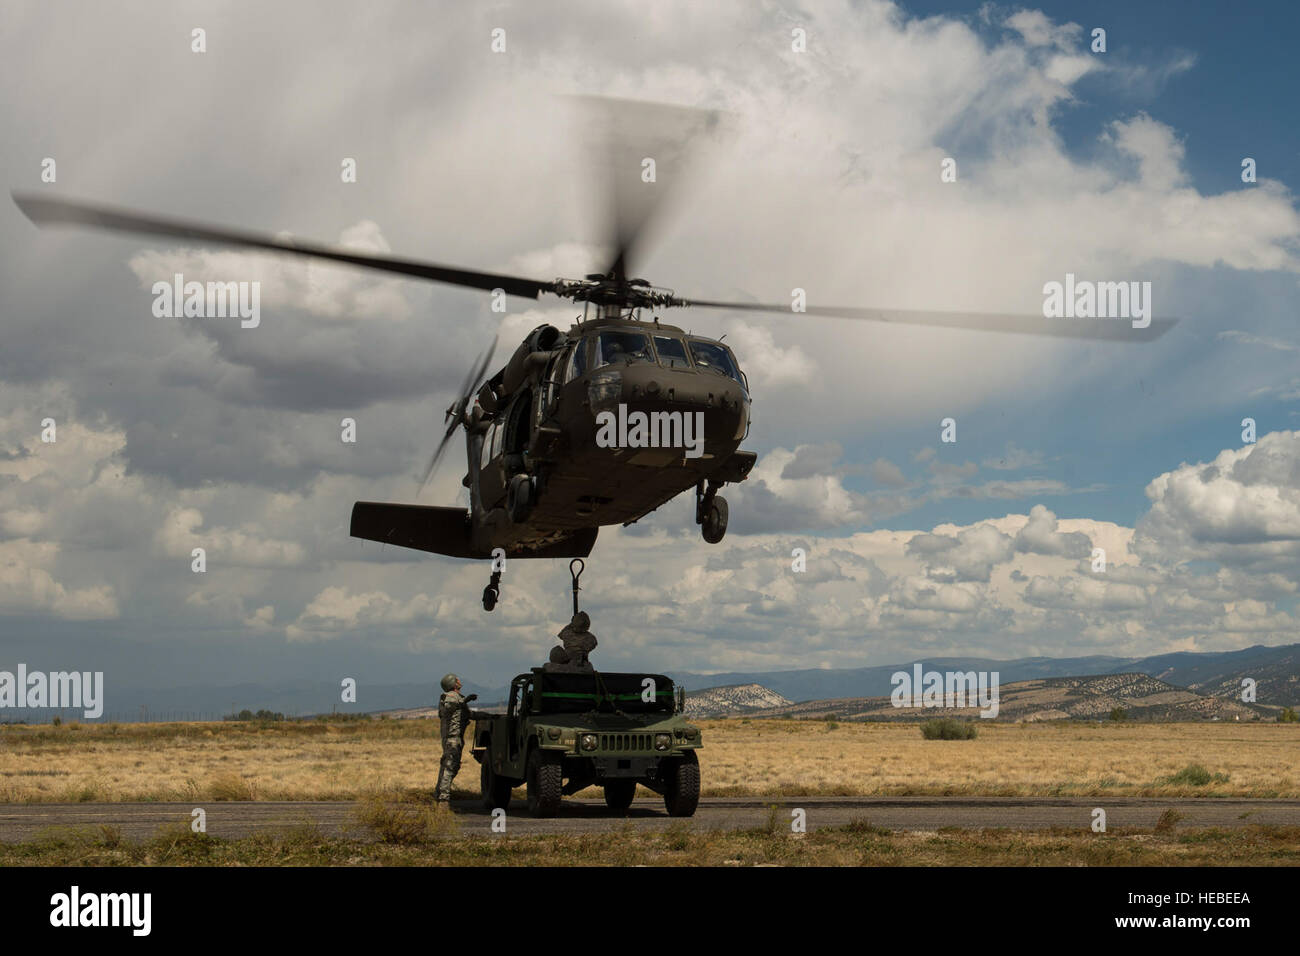 Ein HH-60 Black Hawk-Hubschrauber wird an einem Humvee in Sanpete County, Utah, 14. August 2014 angeschlossen. 211. Aviation Regiment bereitgestellt der Black Hawk als eine Sprung-Plattform für die 19. Special Forces Group. Die 19. SFG springt vierteljährlich um auf Sprung Qualifikationen auf dem Laufenden zu bleiben. (Foto: U.S. Air Force Airman 1st Class Taylor Königin/freigegeben) Stockfoto